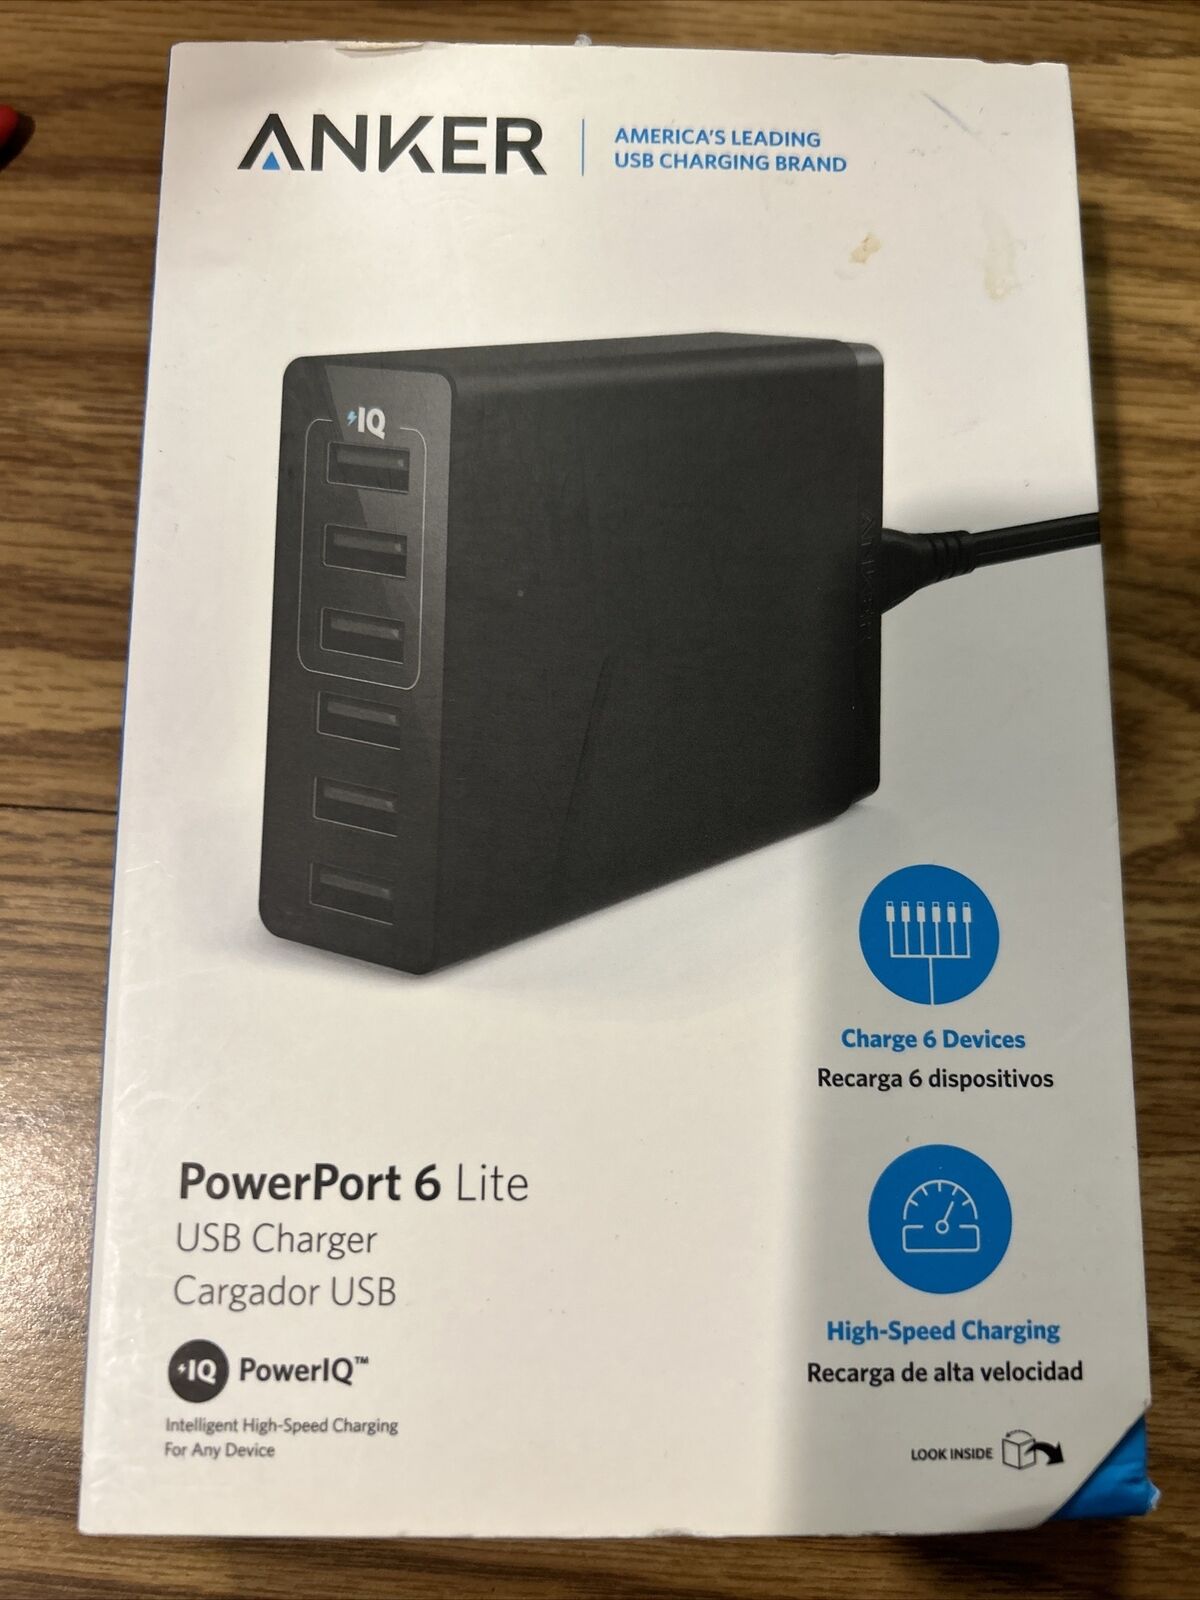 ANKER A2061 Powerport 6 Lite 6 Port Desktop USB Charger Black 100-240V 50-60 HZ